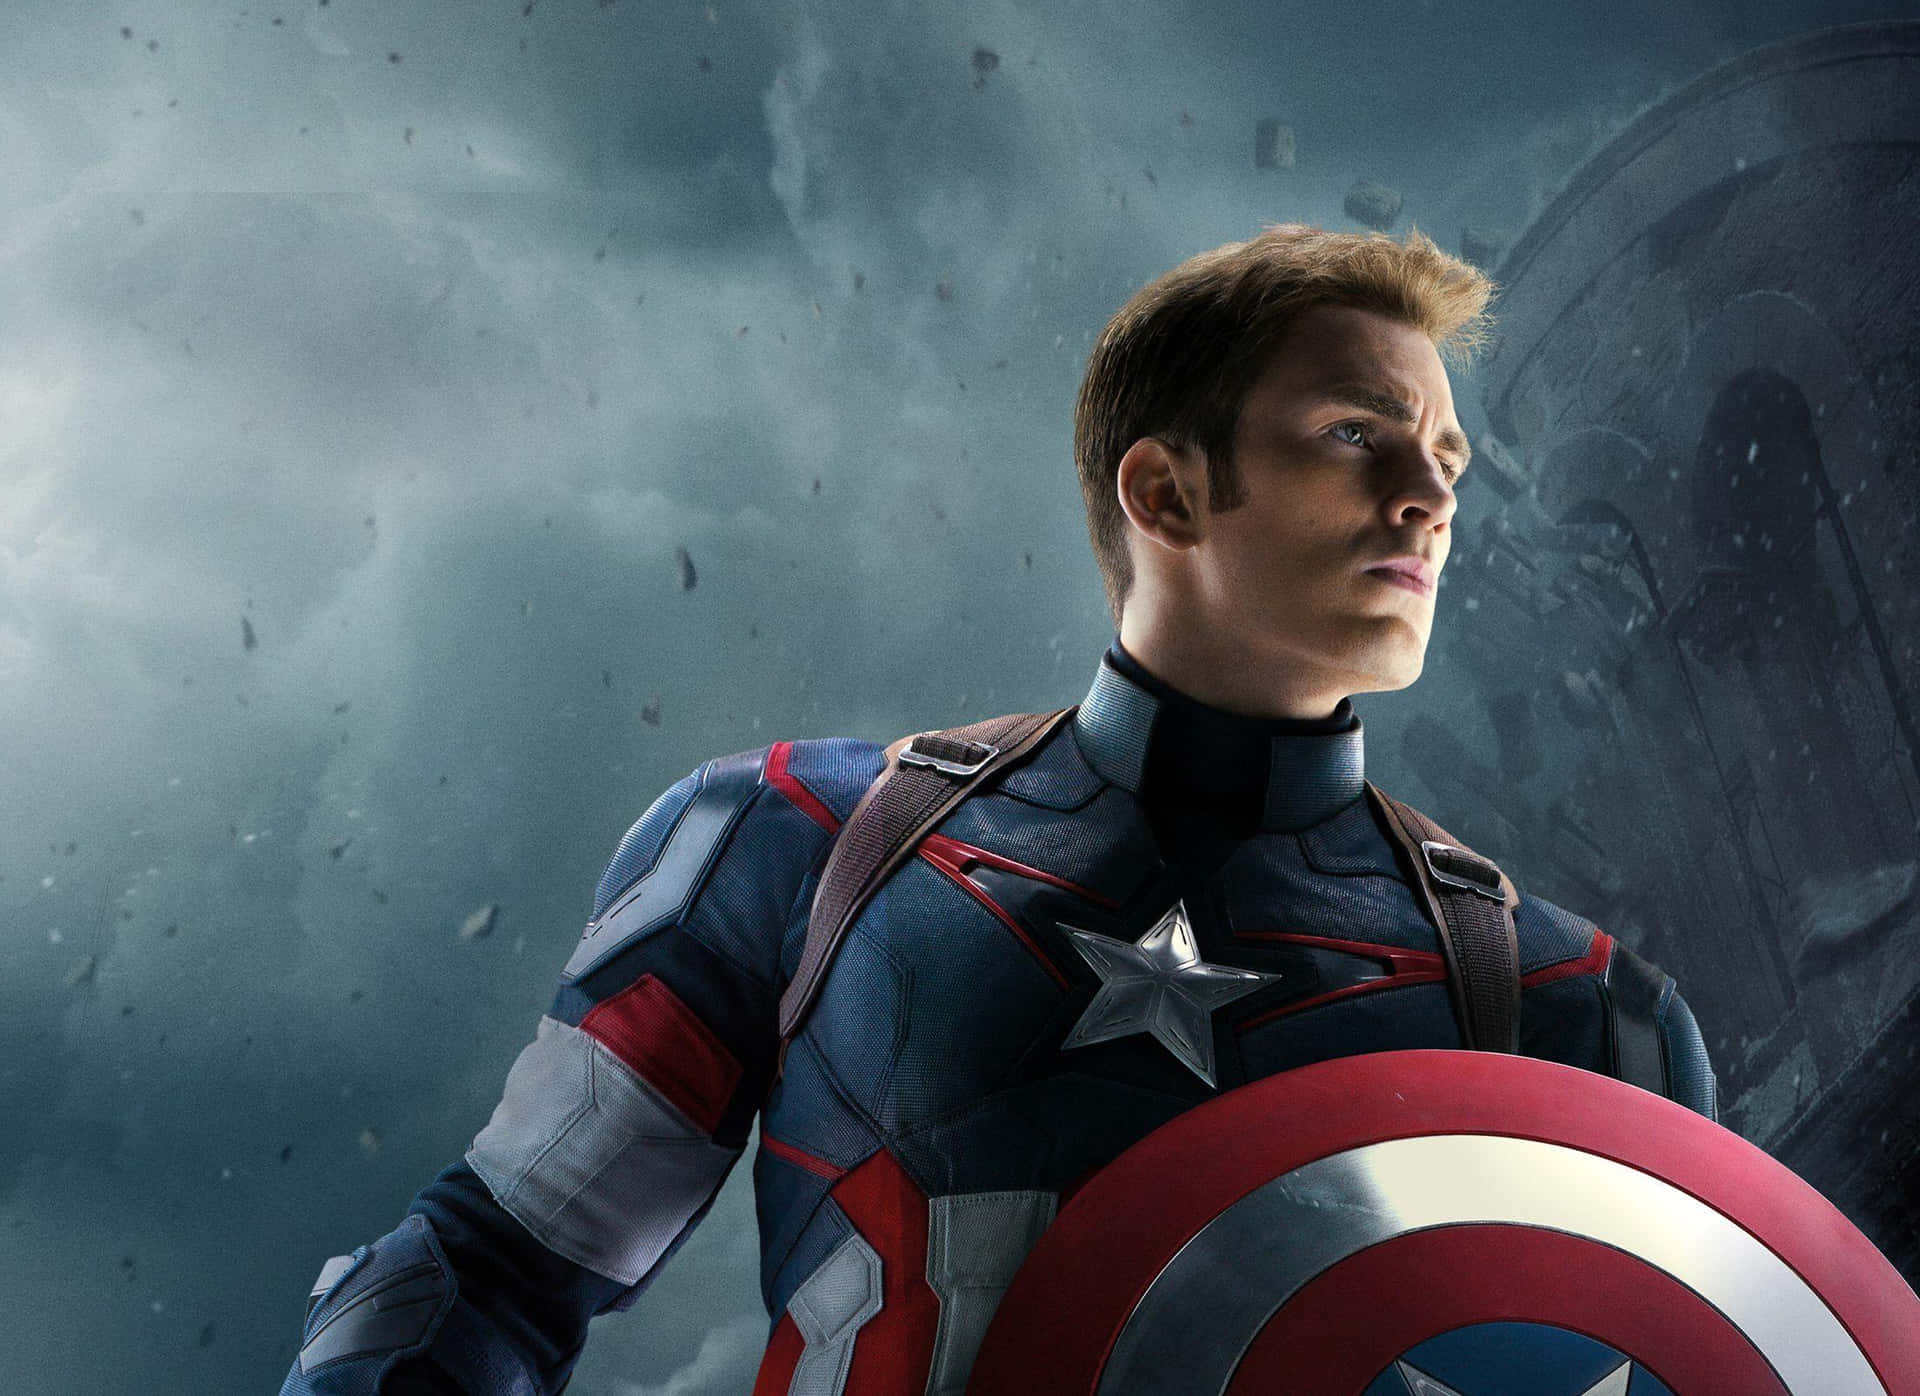 Captain America står klar til at forsvare retfærdighed.